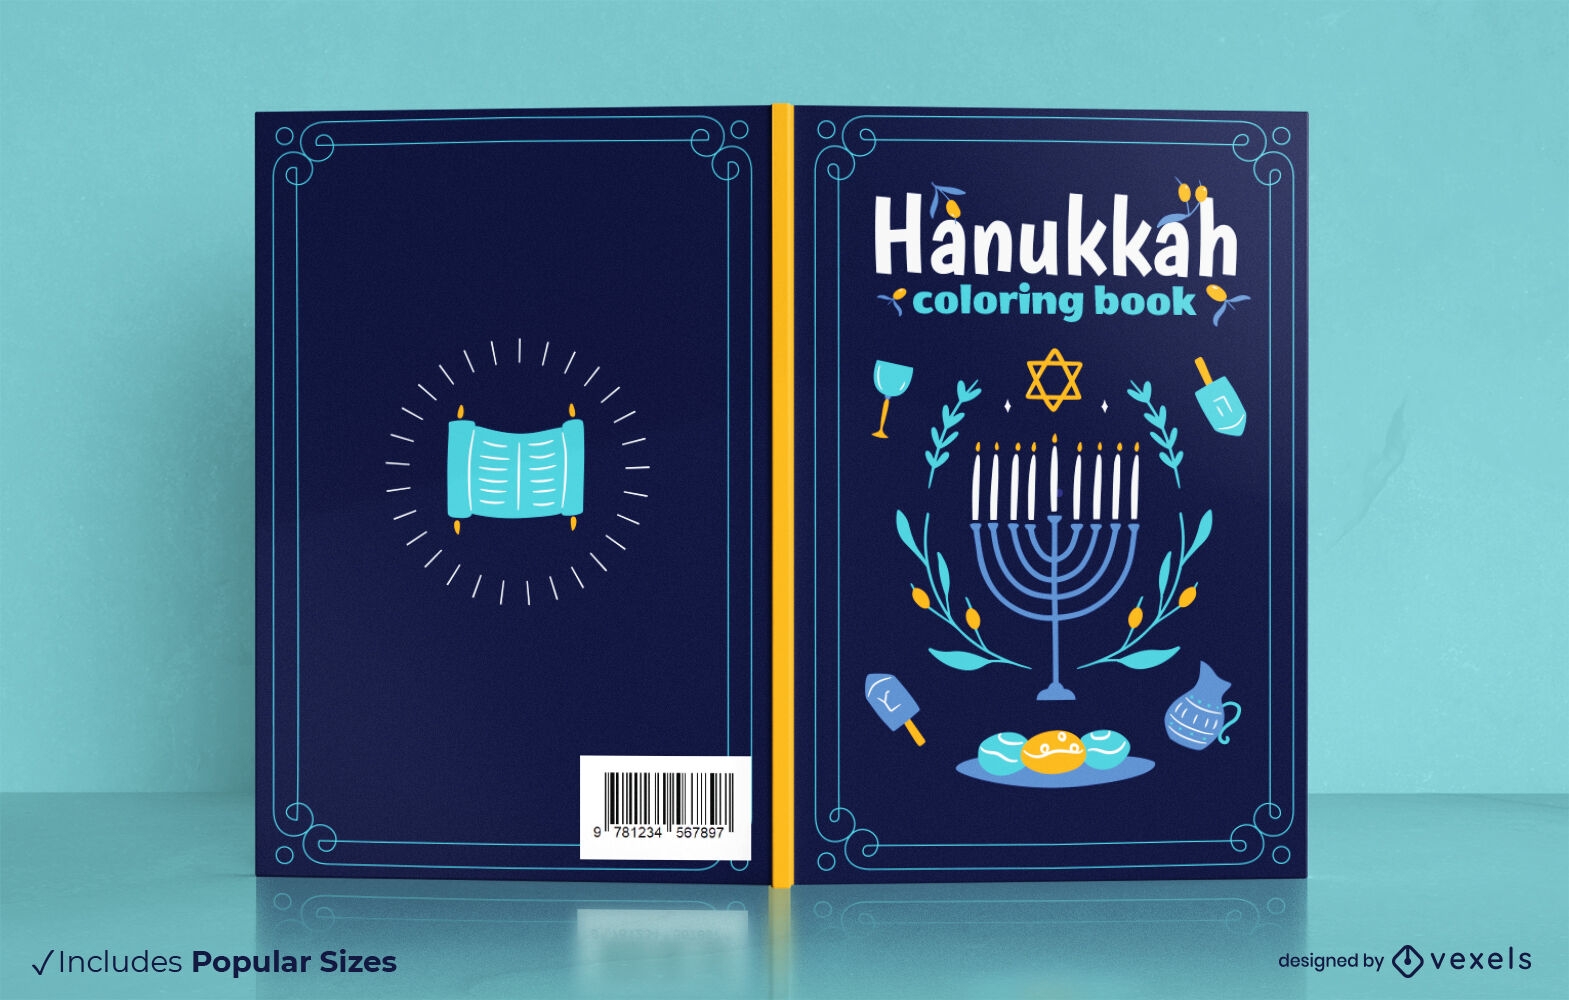 Hanukkah coloring book cover design